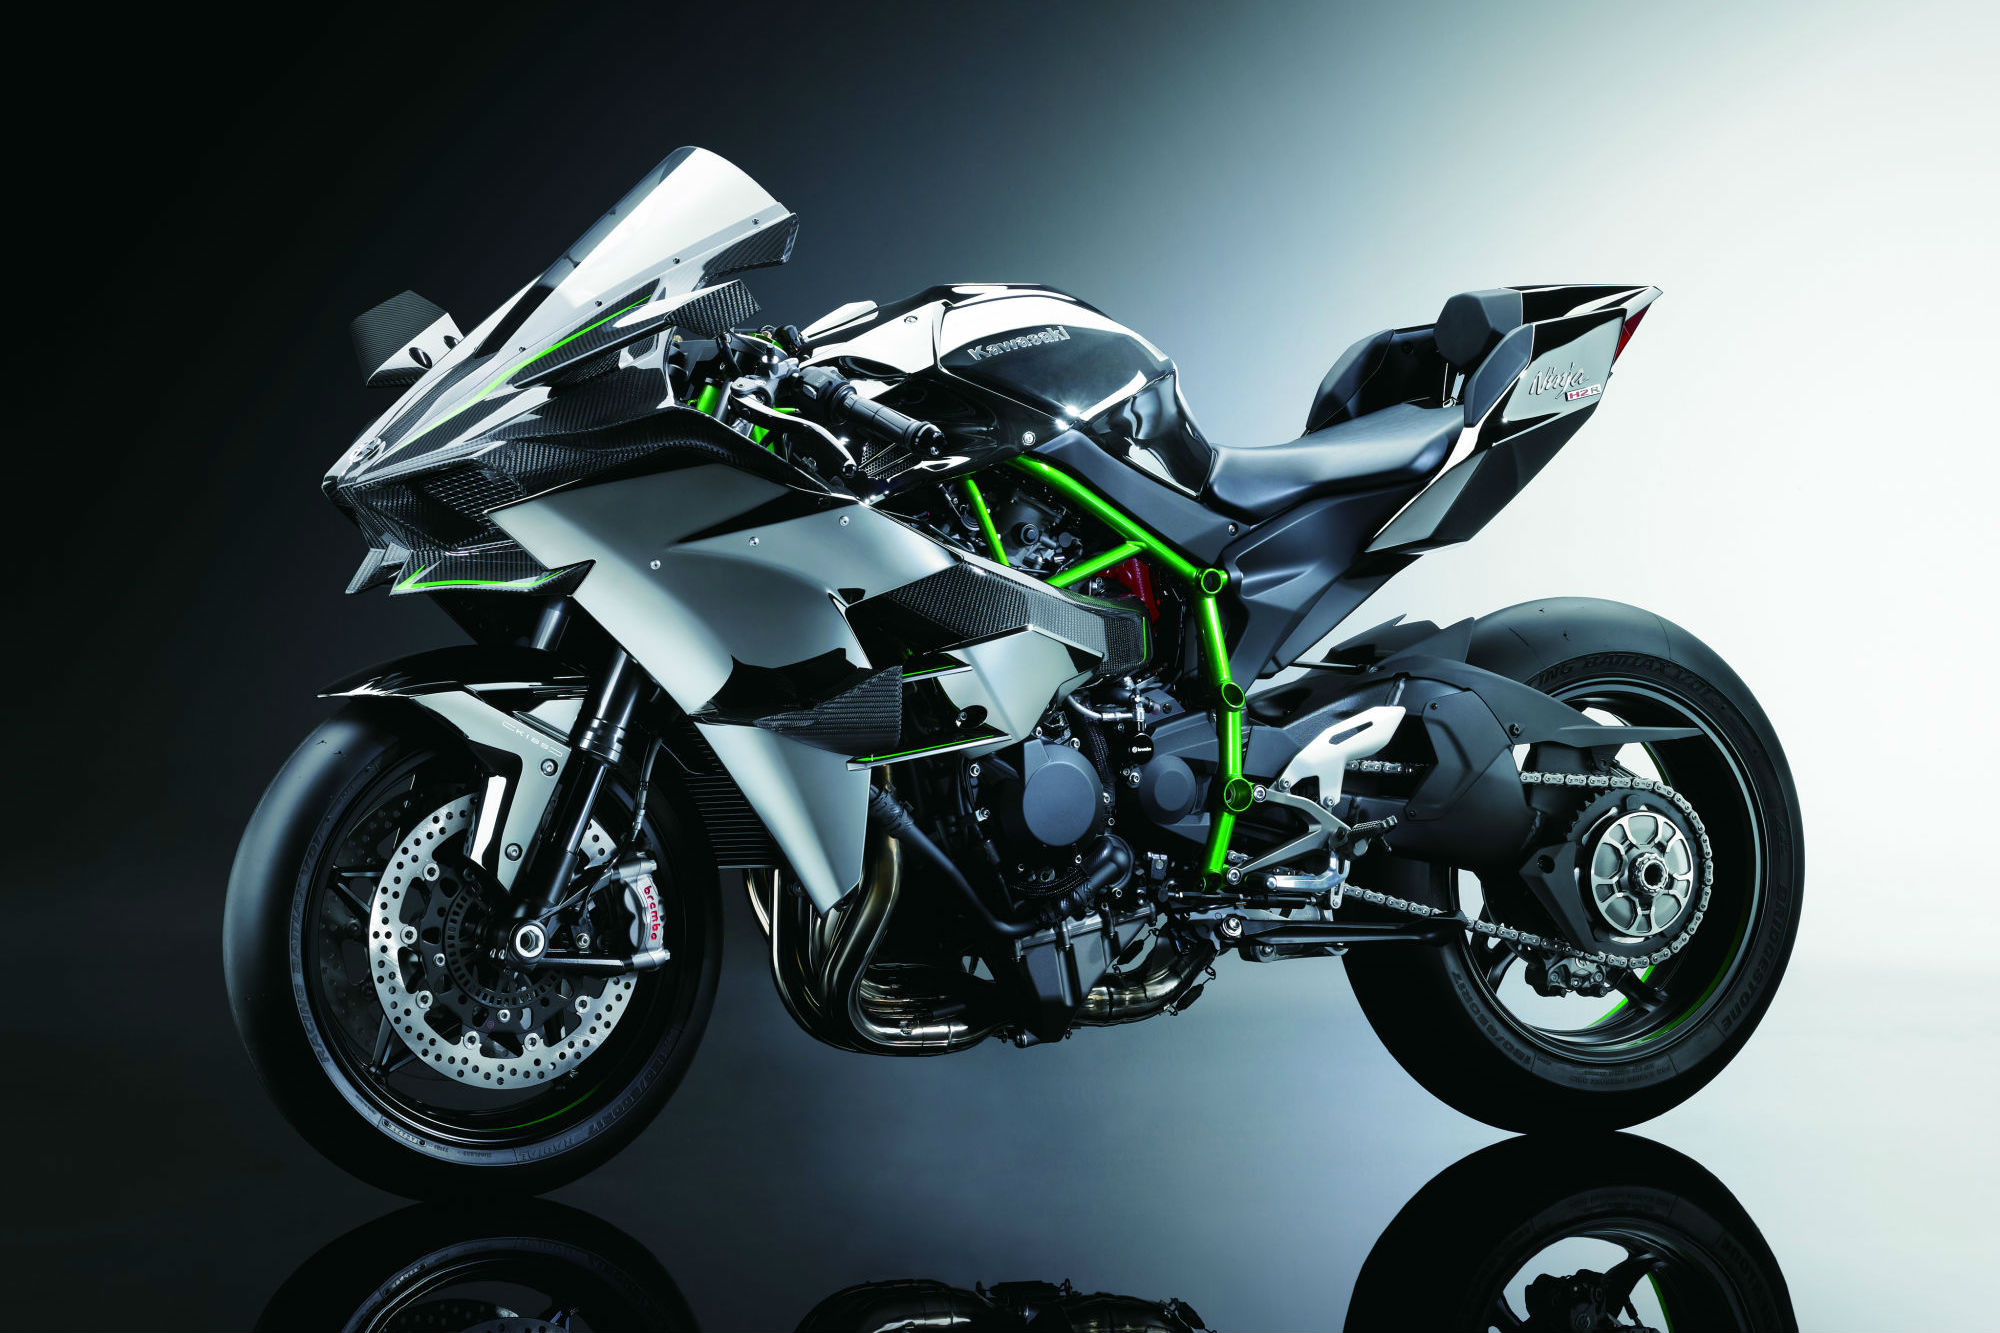 Kawasaki Ninja H2 and H2R to make UK debut at Motorcycle Live